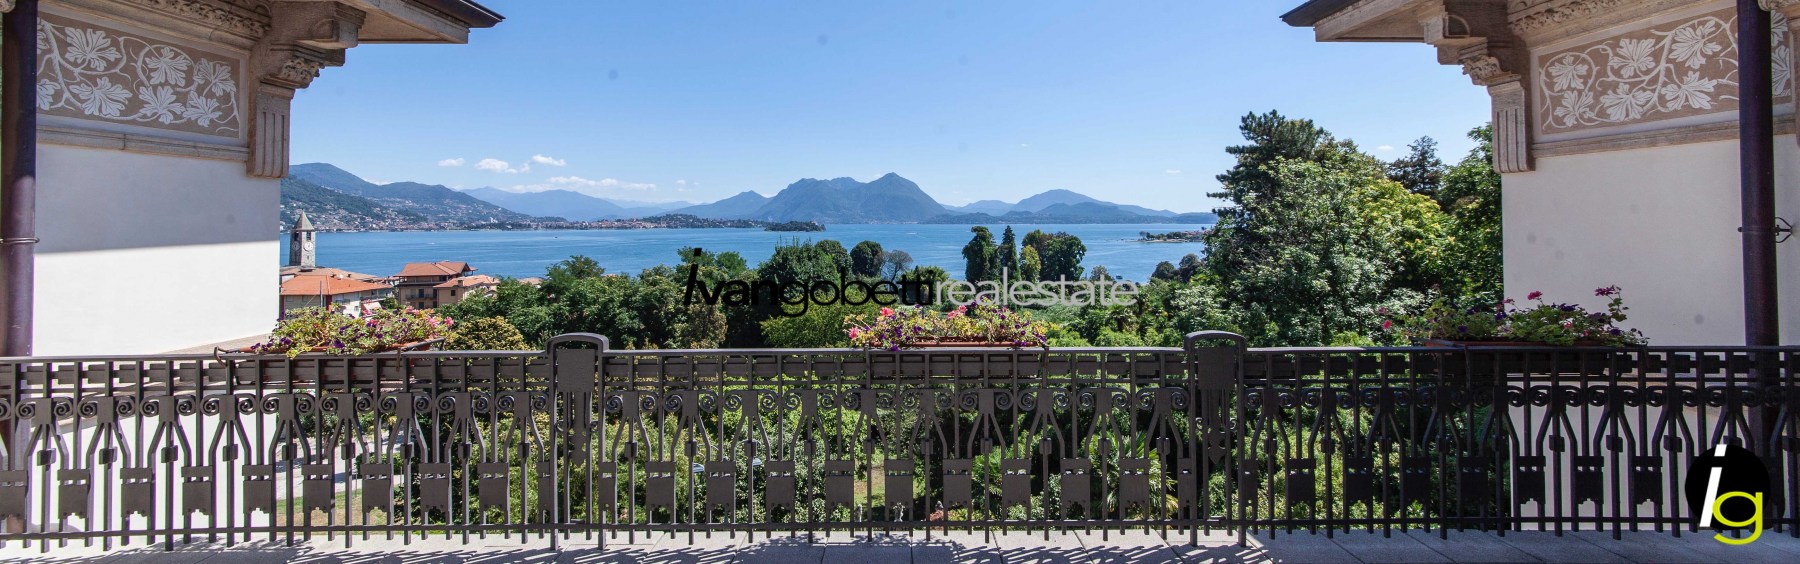 Lussuosa Villa storica in vendita a Baveno Lago Maggiore<br/><span>Codice prodotto: 110877